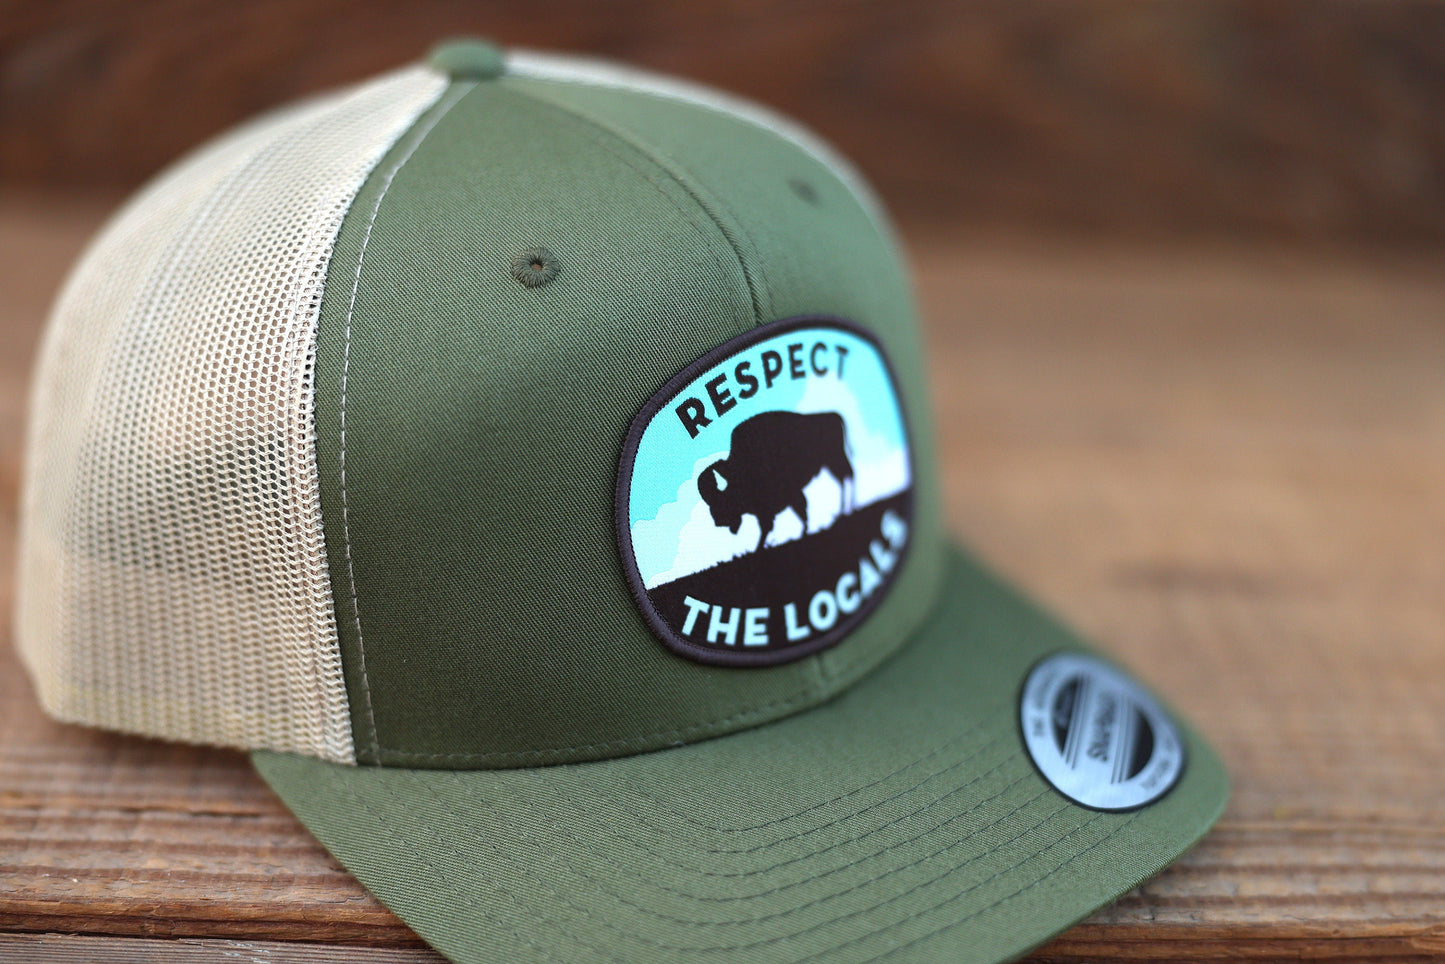 Respect The Locals Bison Trucker Hat